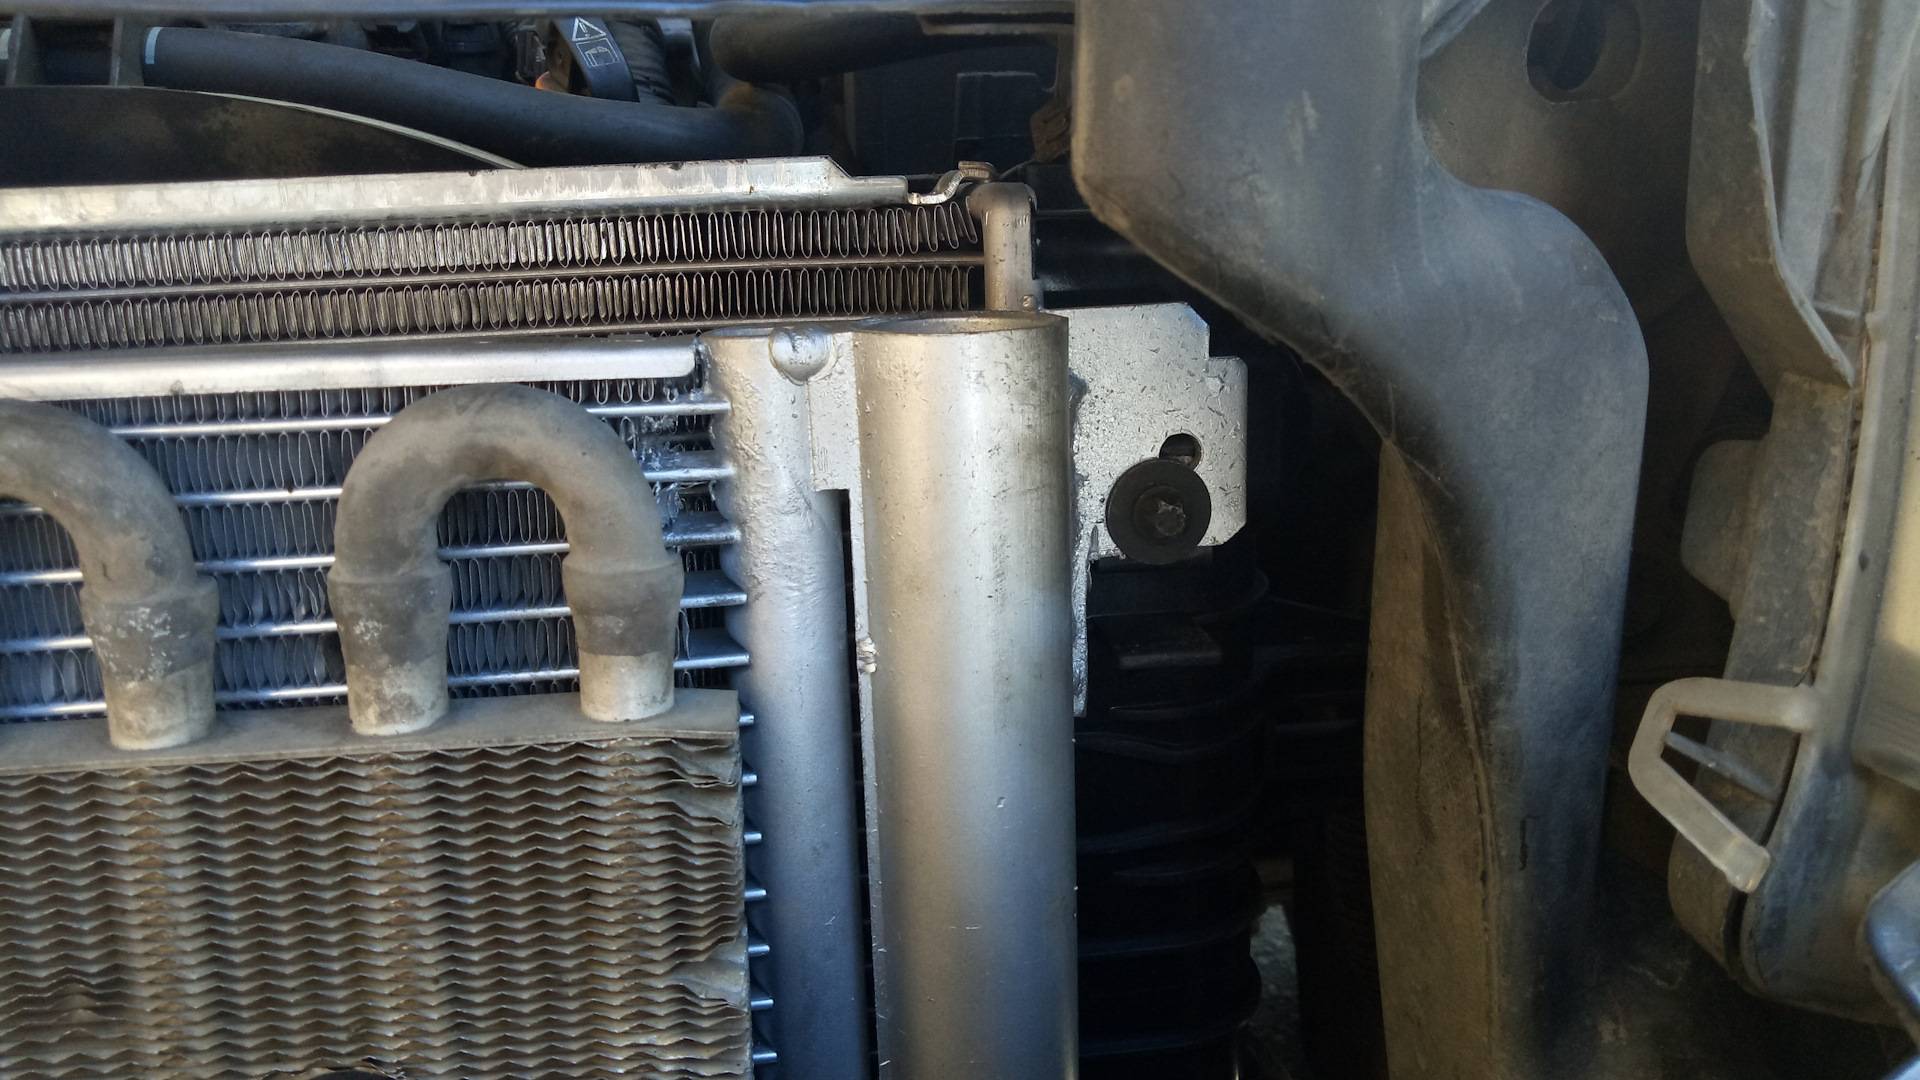 Ремонт радиатора кондиционера автомобиля своими руками